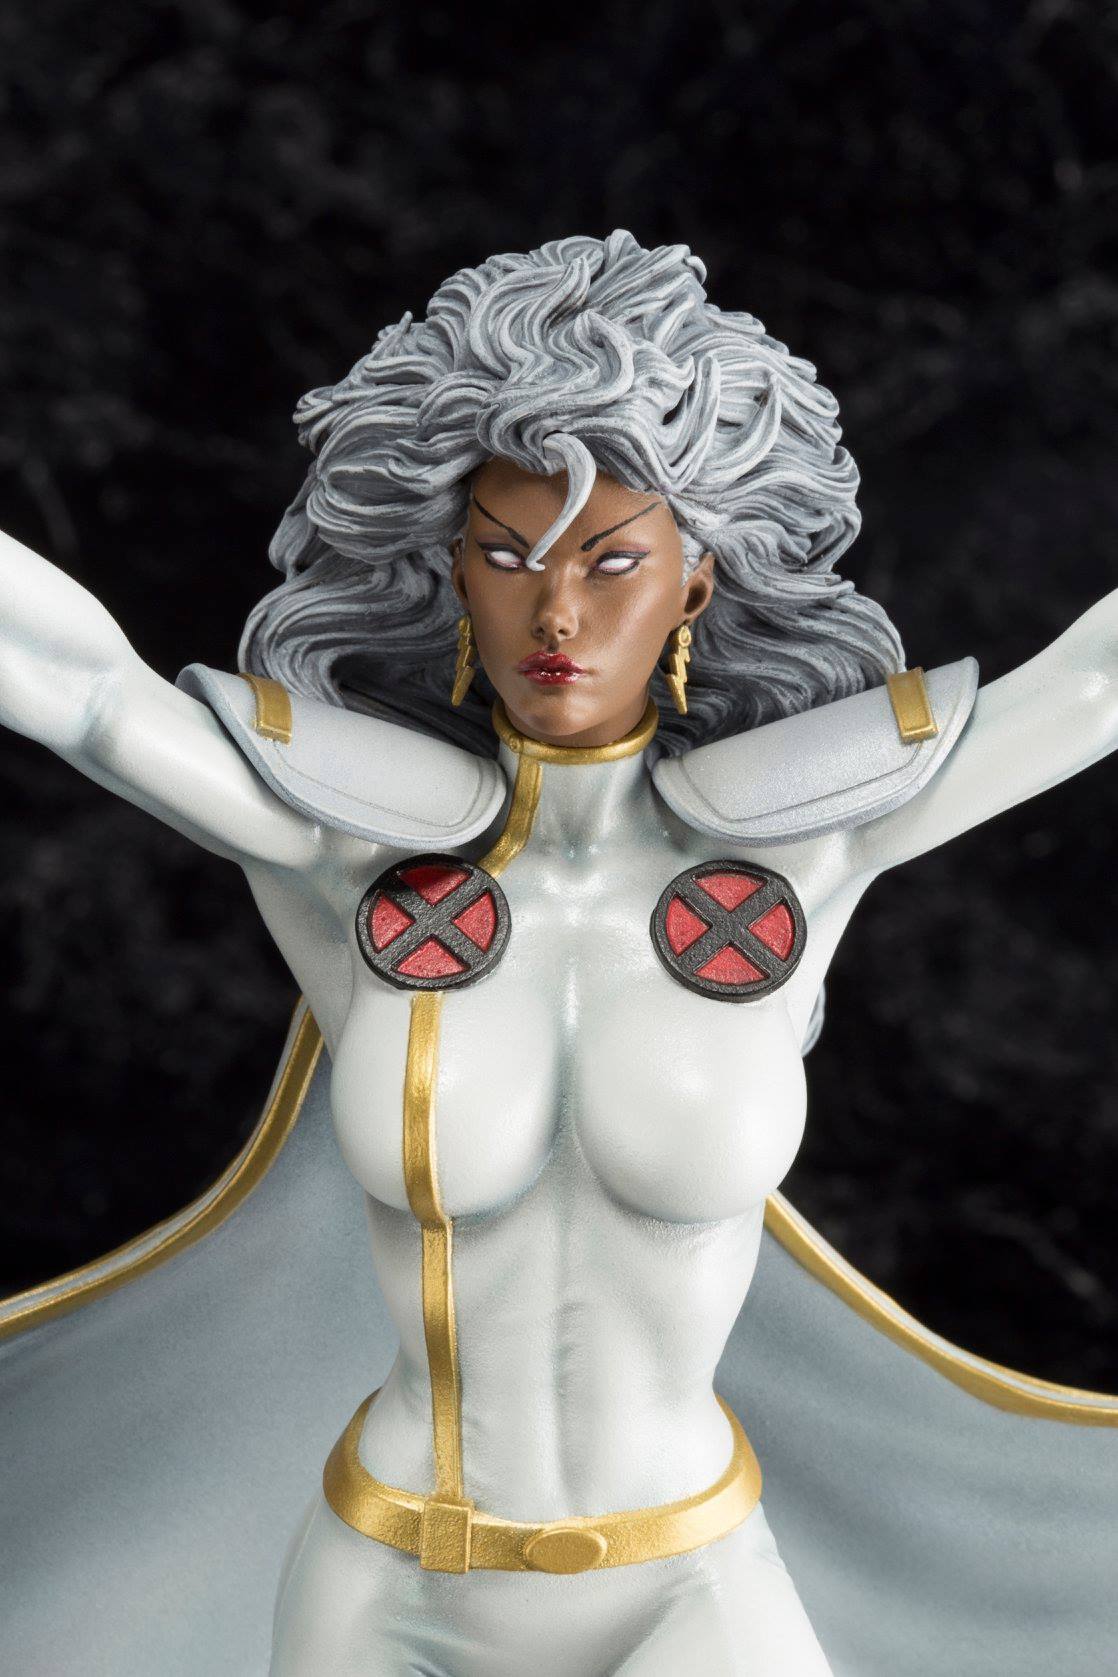 Kotobukiya Storm X-Men Danger Room Sessions Statue Up for Order